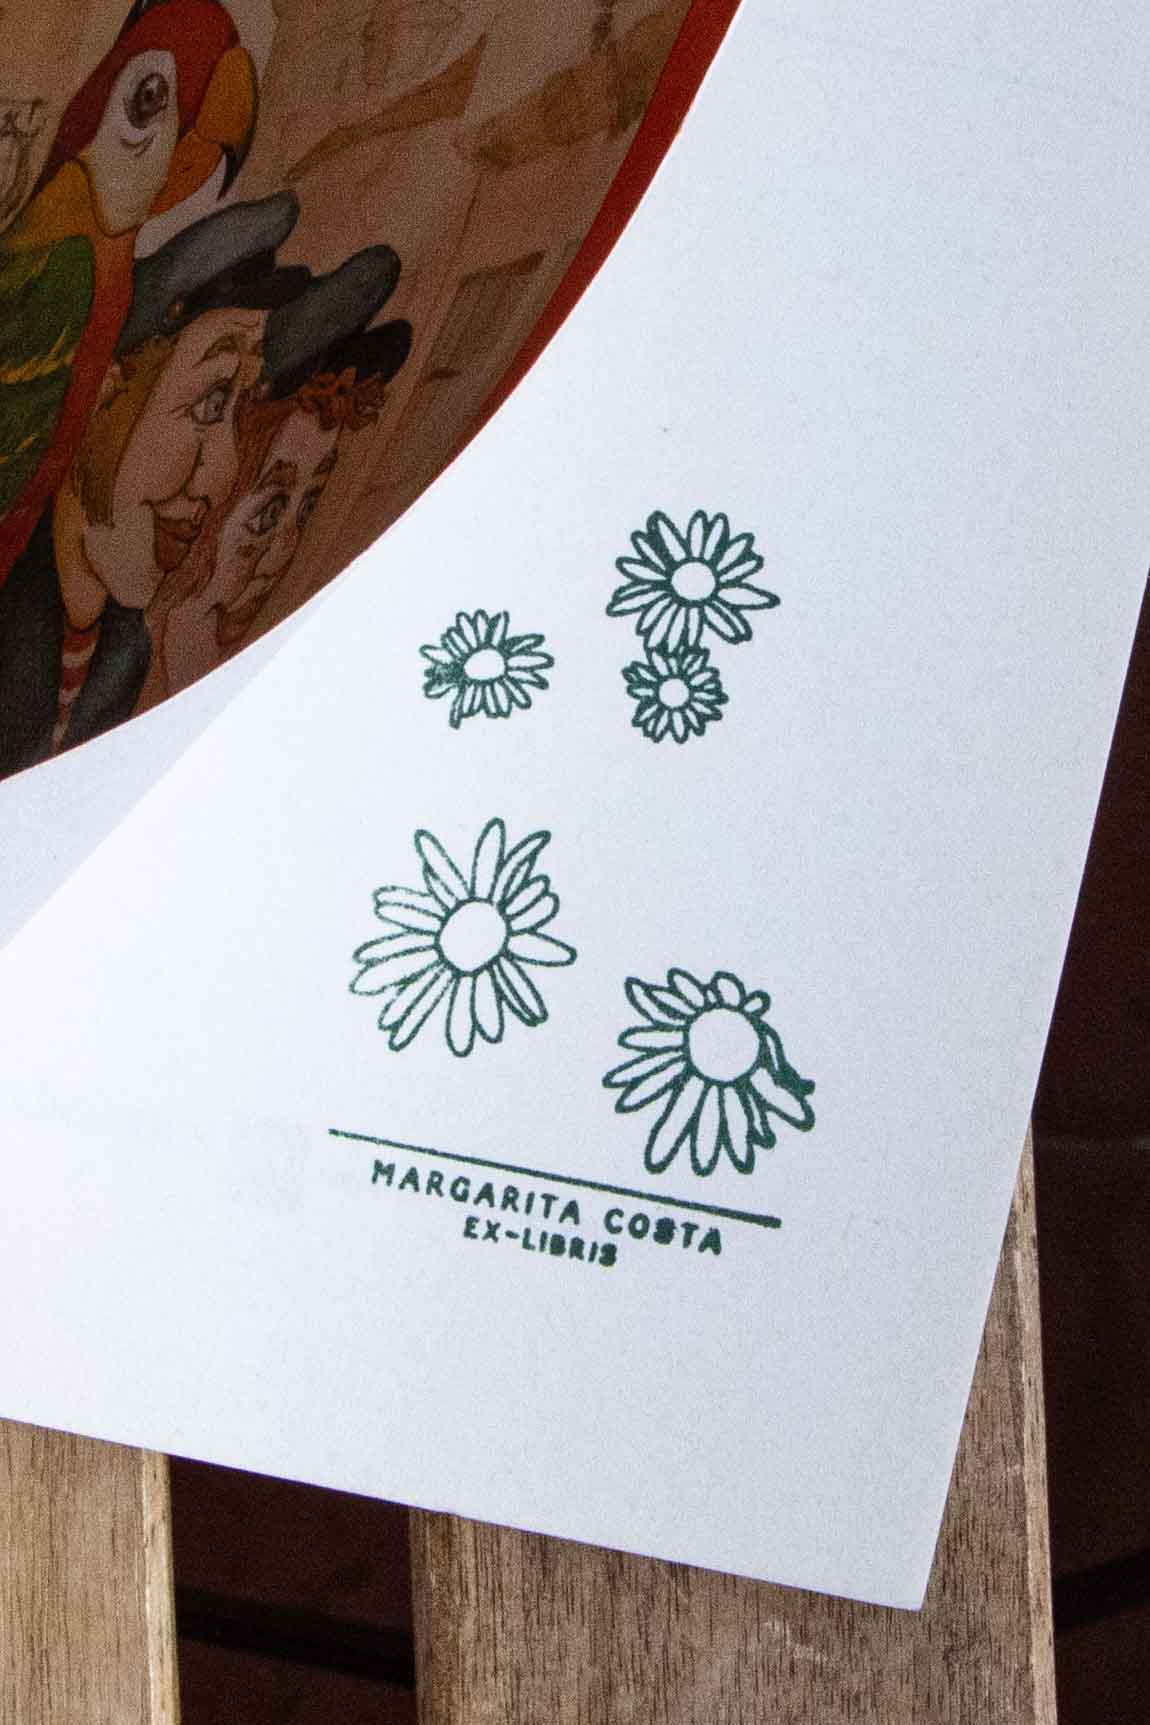 Portadilla de libro estampada con sello exlibris de flores margaritas